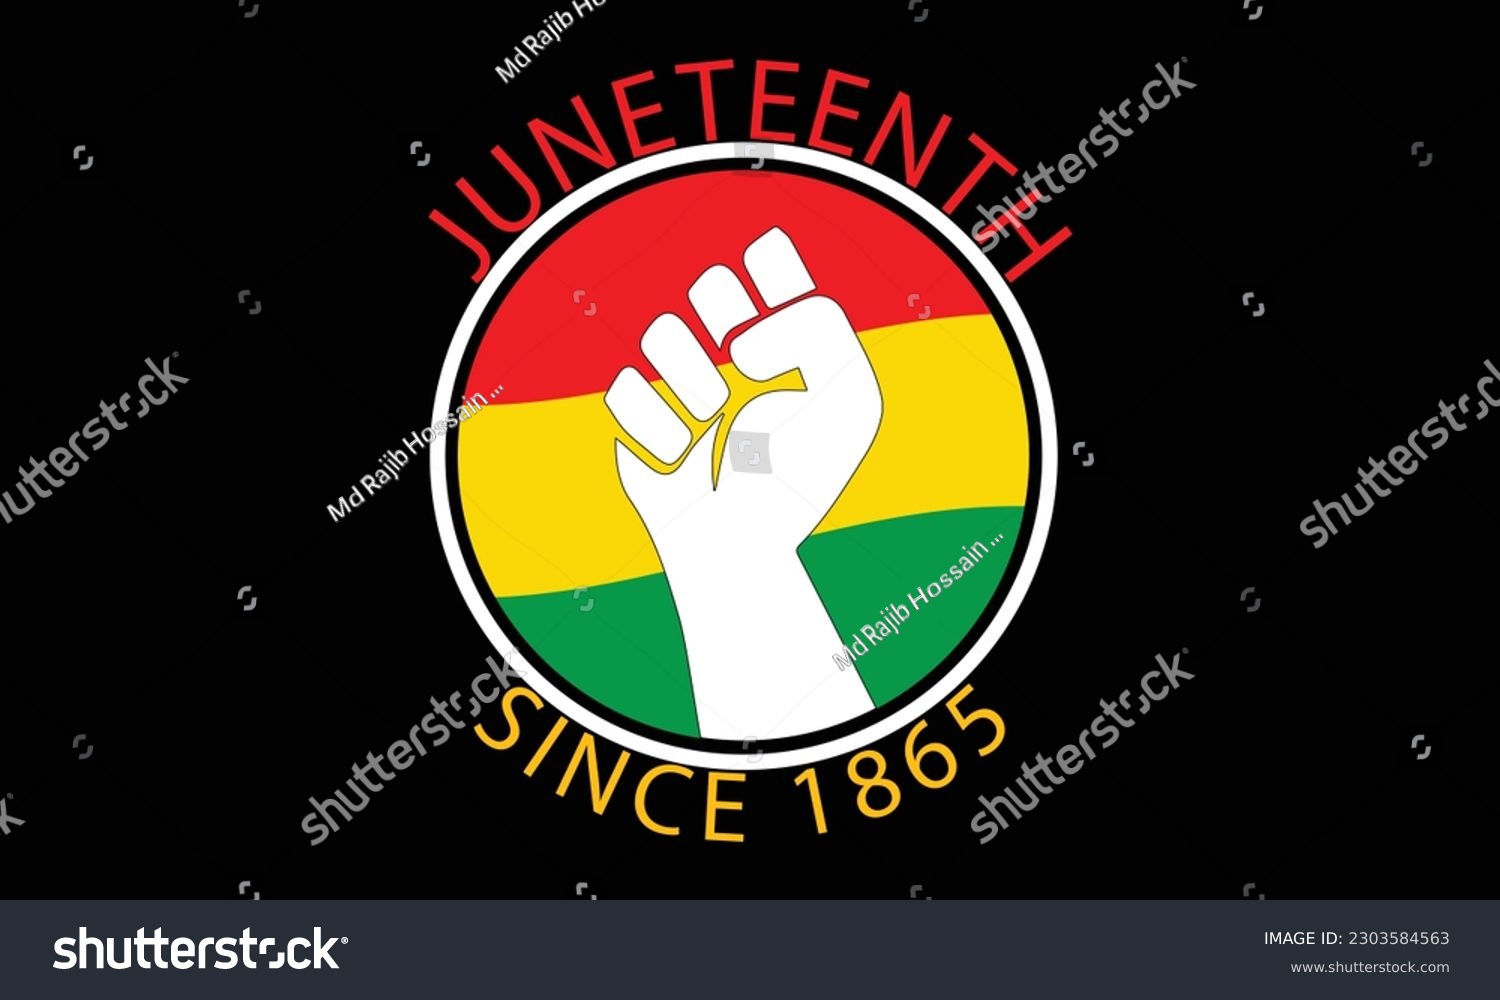 SVG of Juneteenth 19th June 1865 T-Shirt, African American Shirt, Afro-American, Free-ish Since 1865, Juneteenth Shirt, Black History, Black Power, Black History Month, Celebrate Juneteenth T-Shirt Design svg